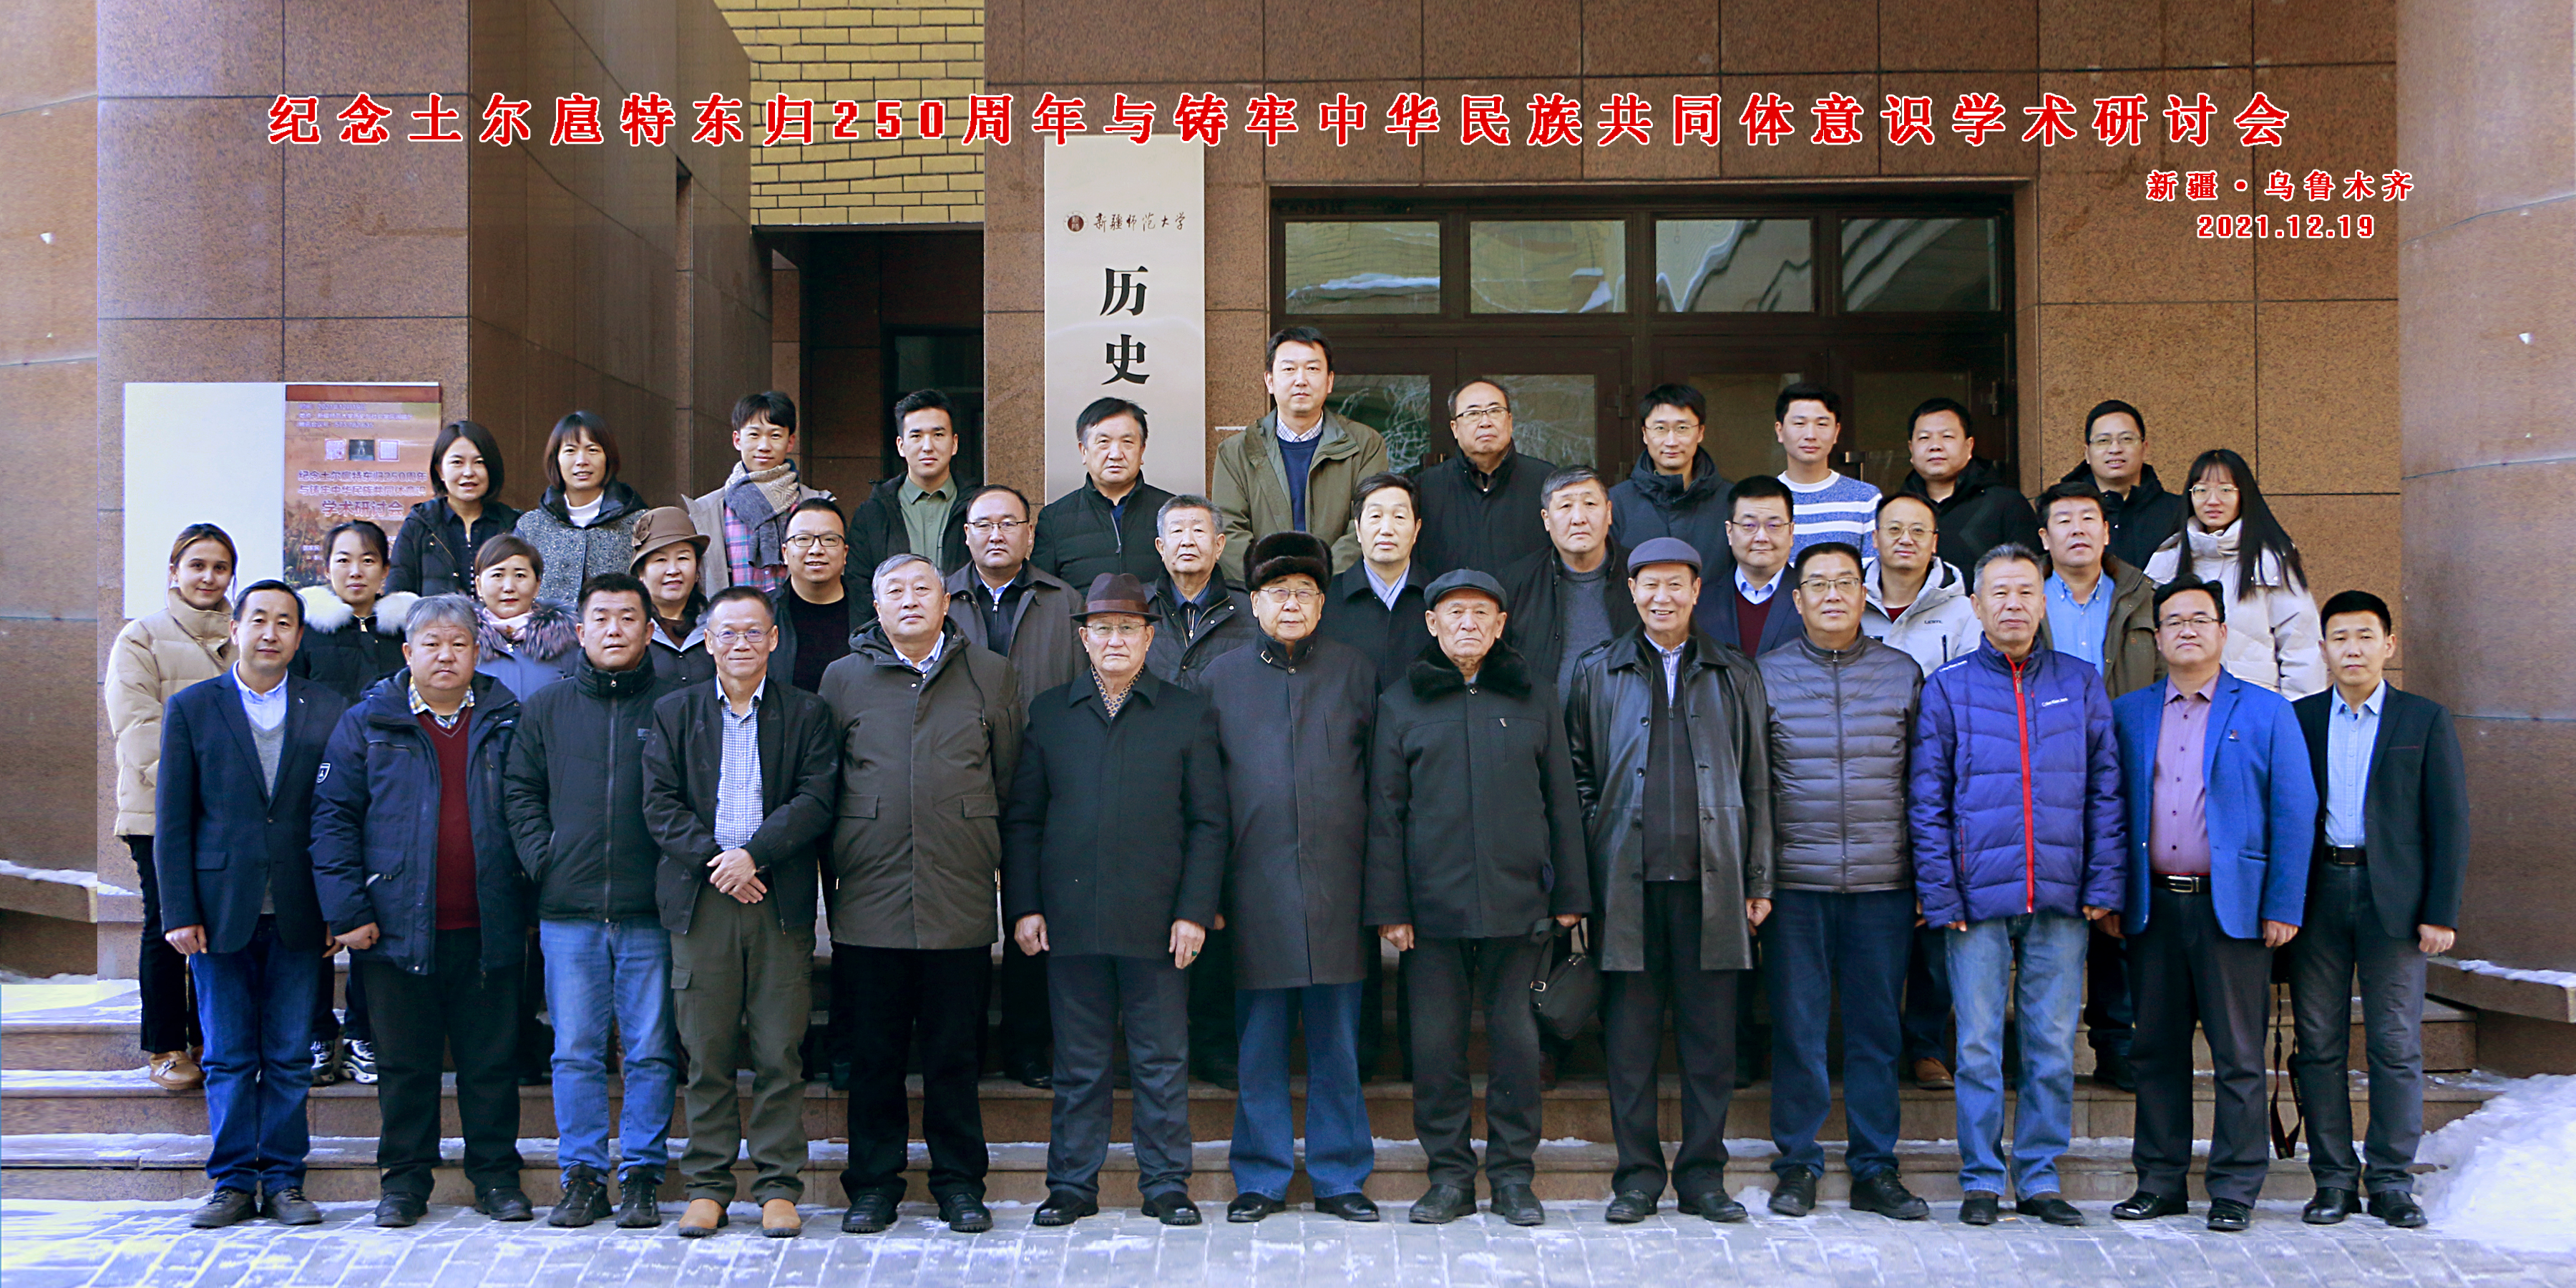 我院成功举办“纪念土尔扈特东归250周年与铸牢中华民族共同体意识学术研讨会”